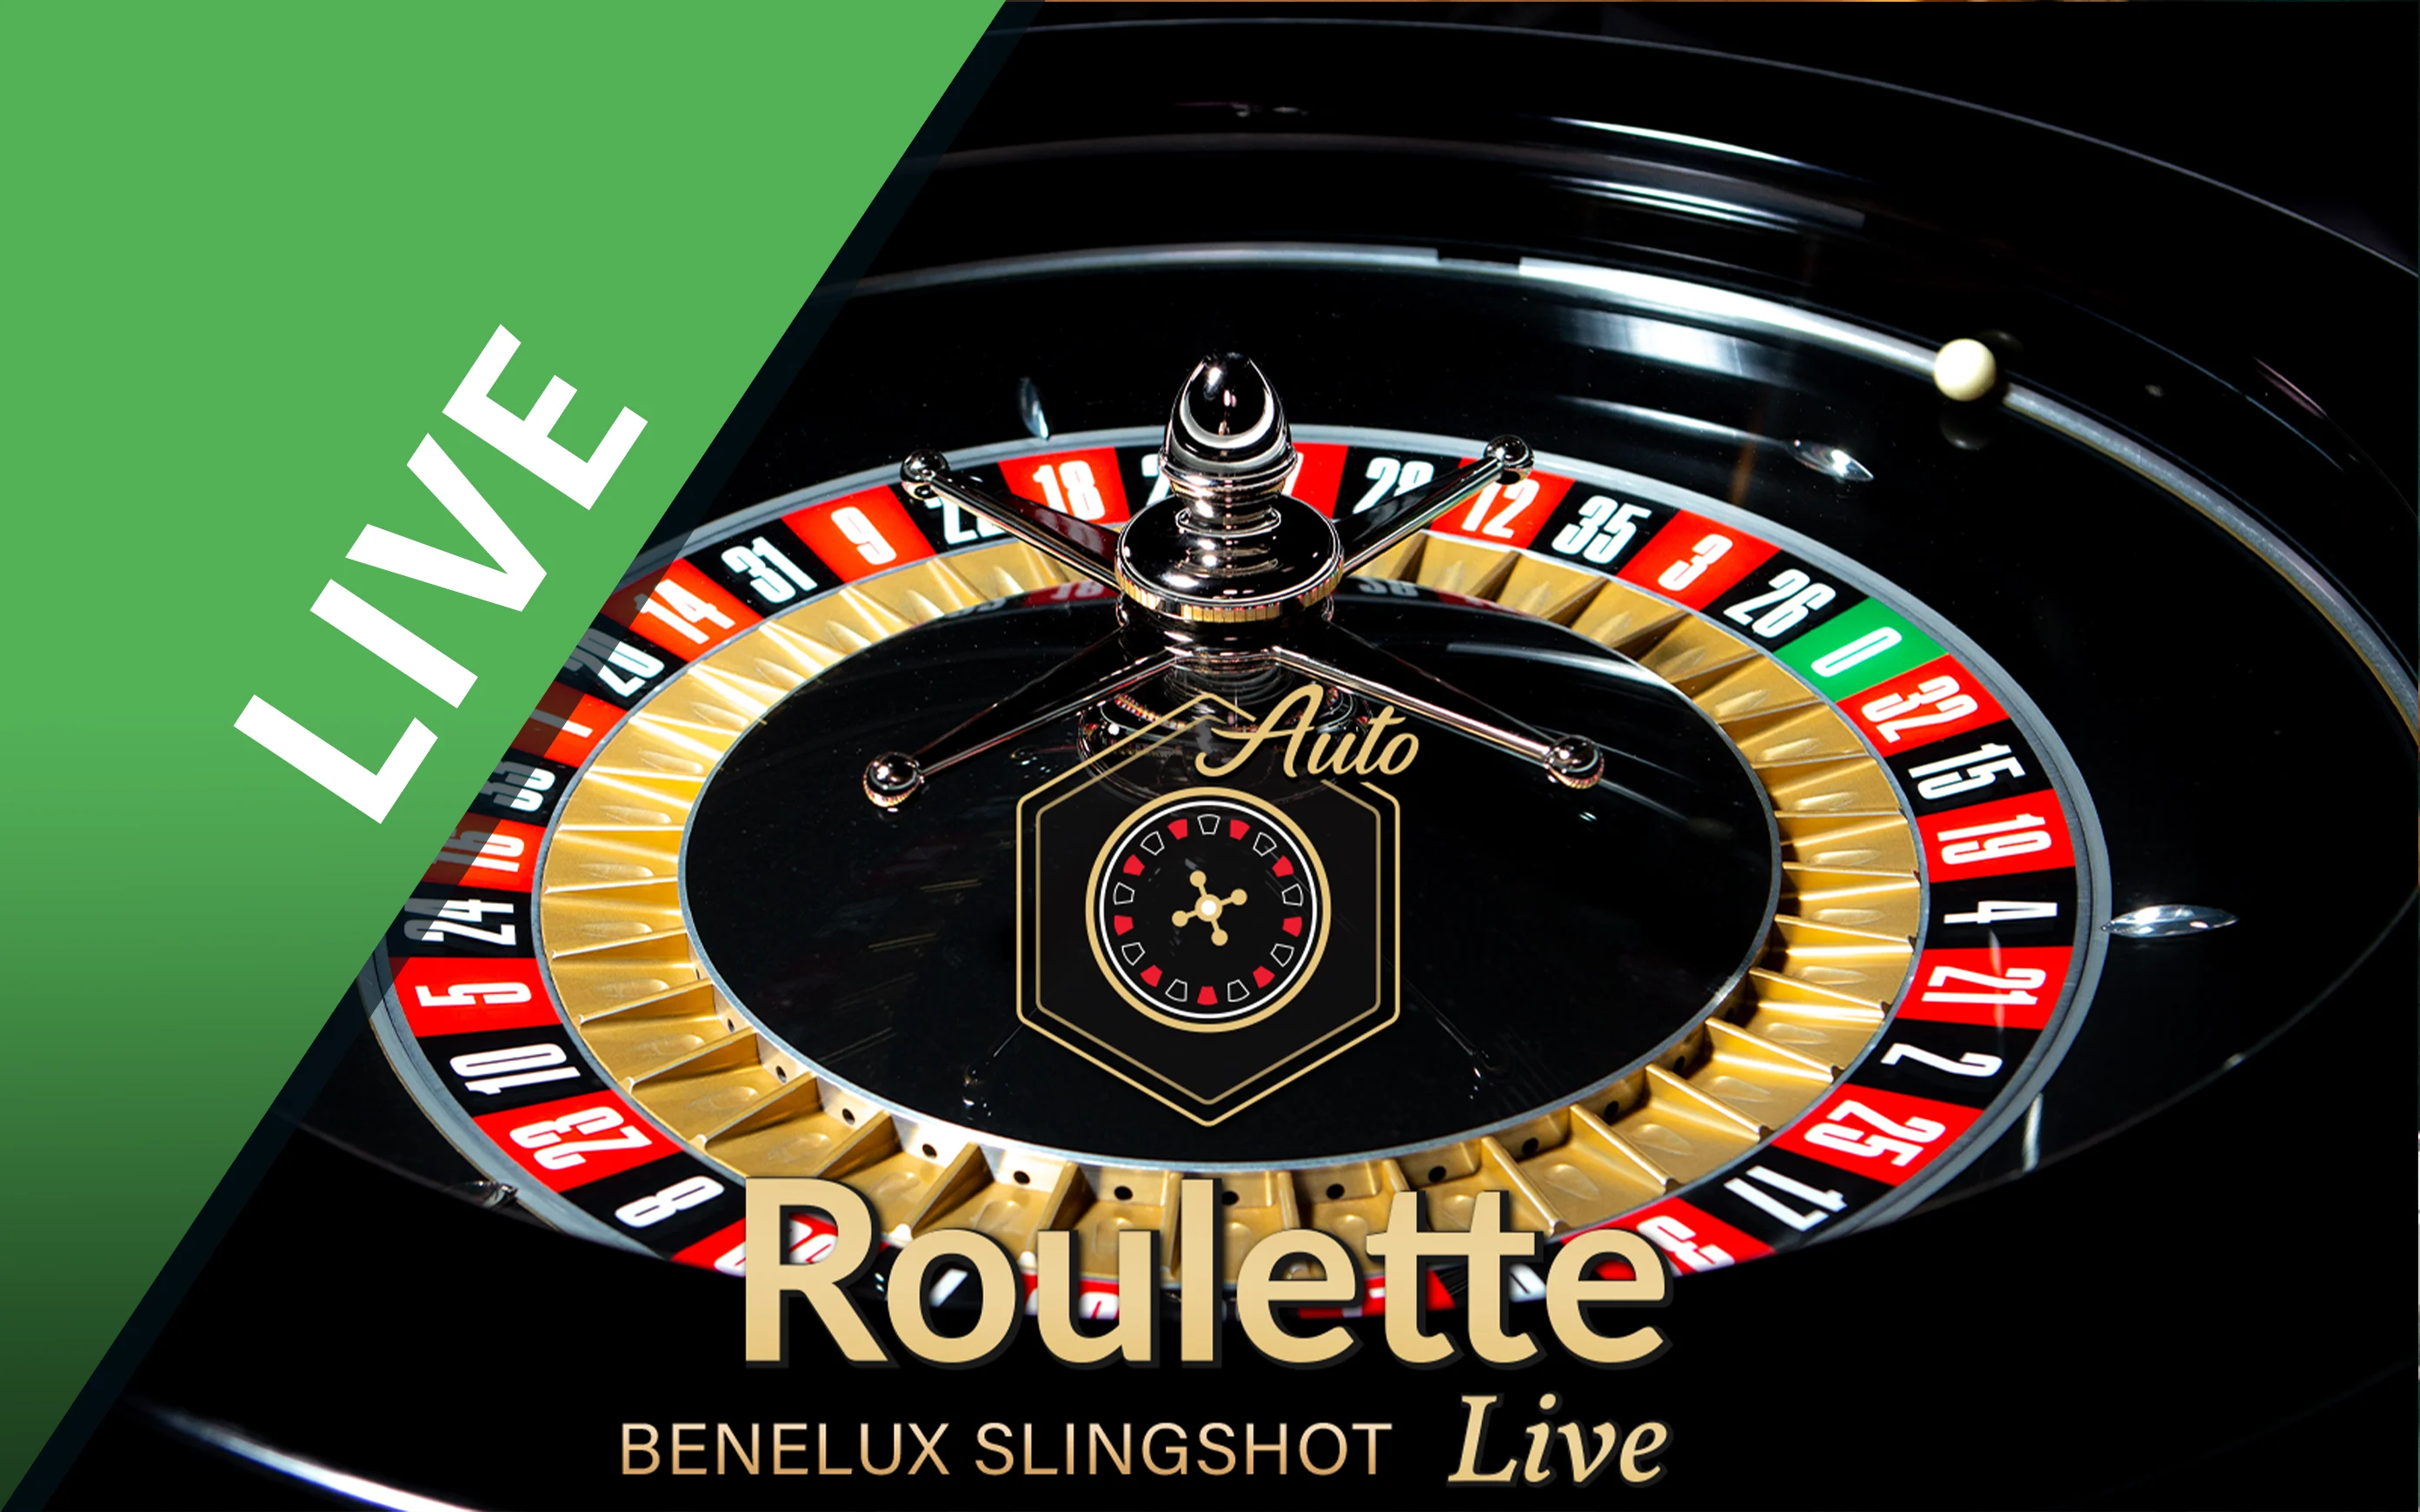 Speel Benelux Slingshot Roulette op Starcasino.be online casino